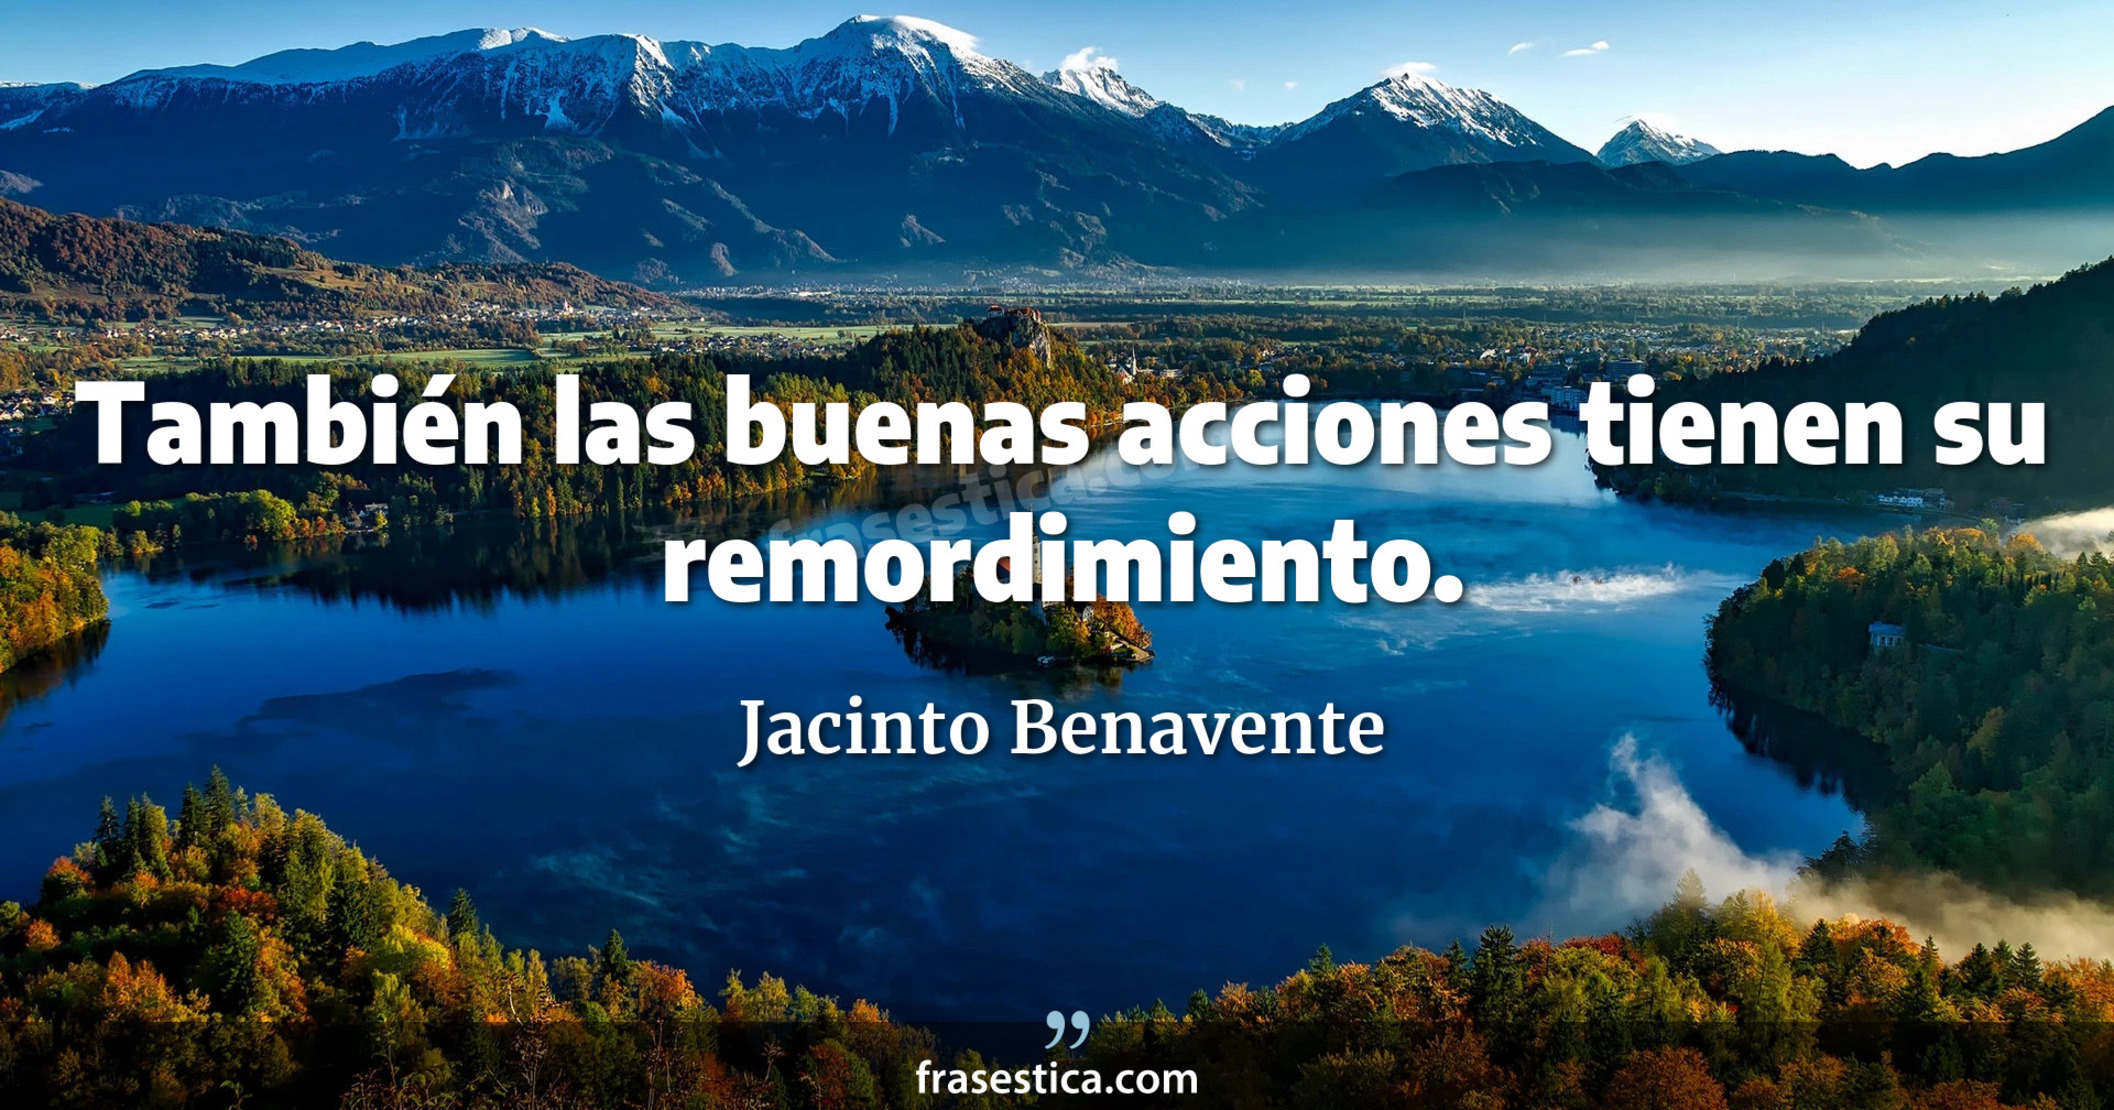 También las buenas acciones tienen su remordimiento. - Jacinto Benavente